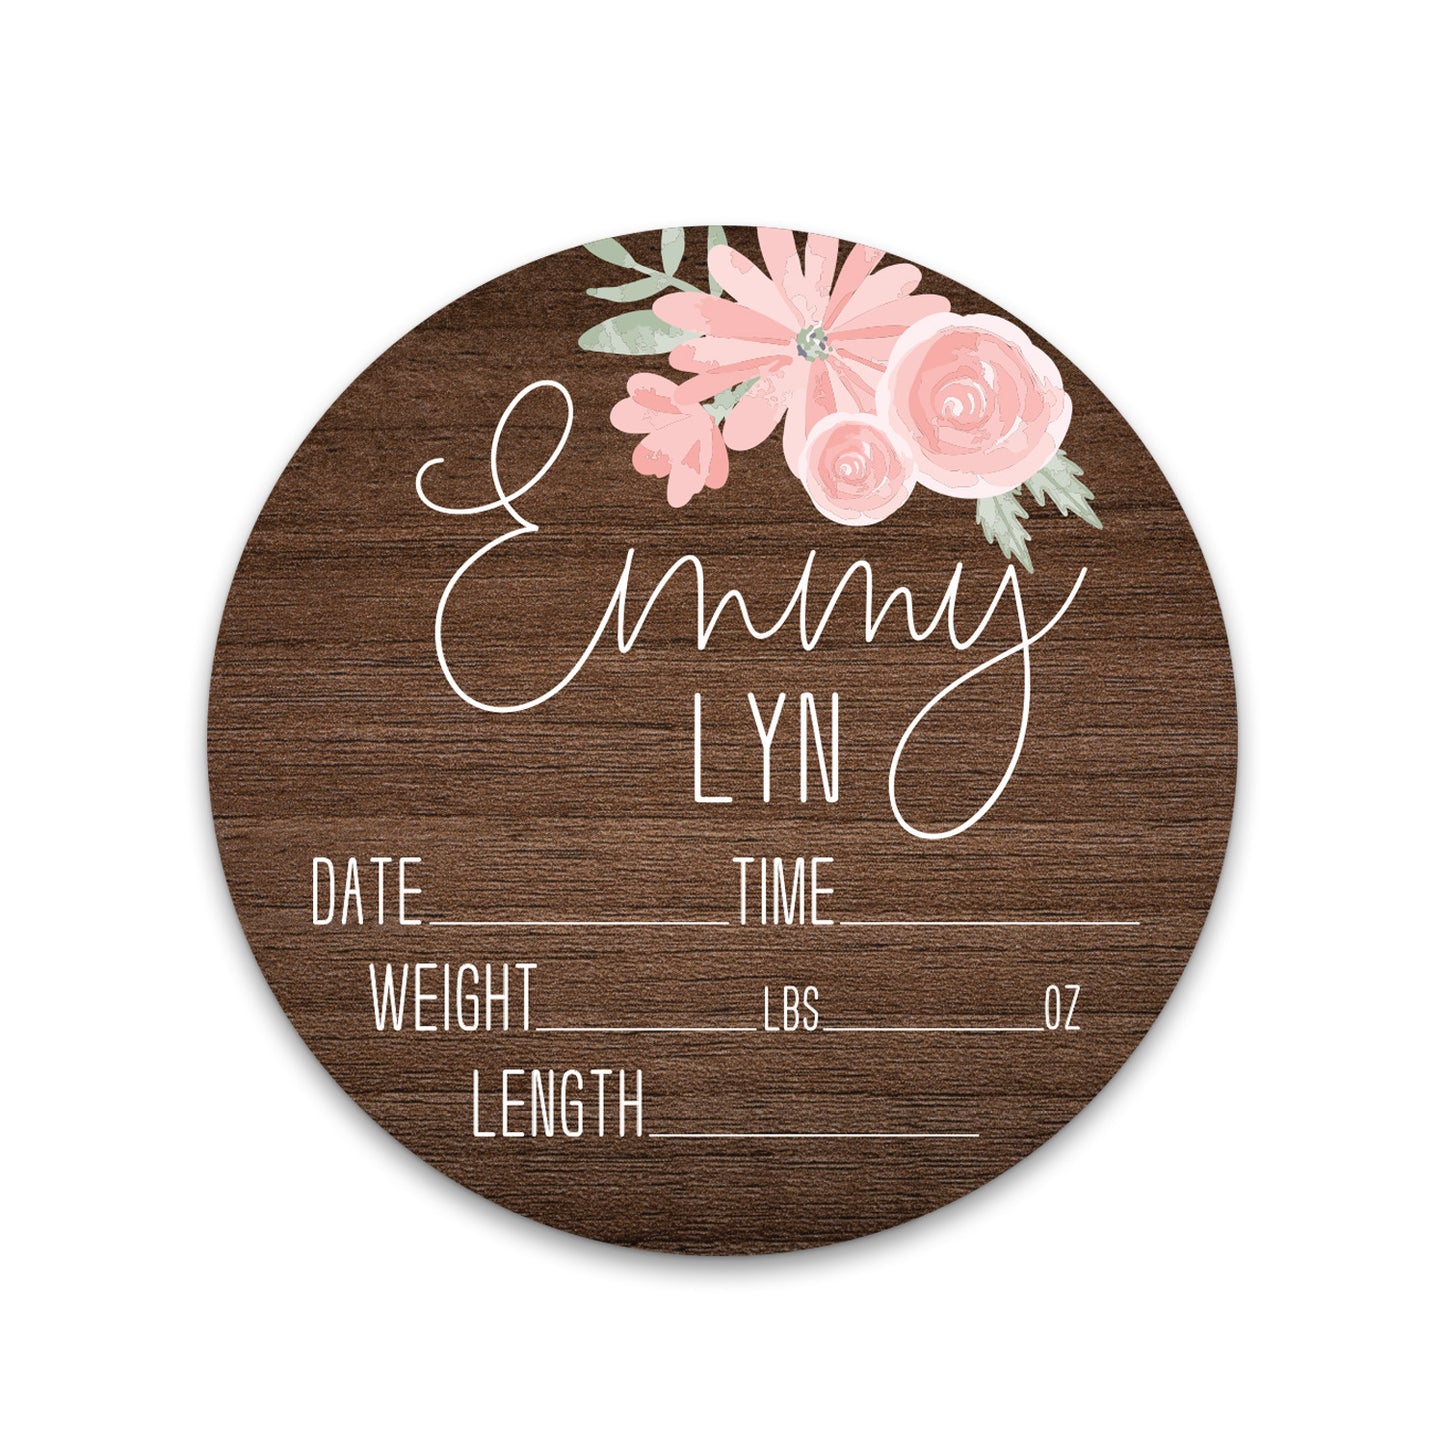 Emmy Lyn Soft Pink Floral Dark Wood Birth Stat